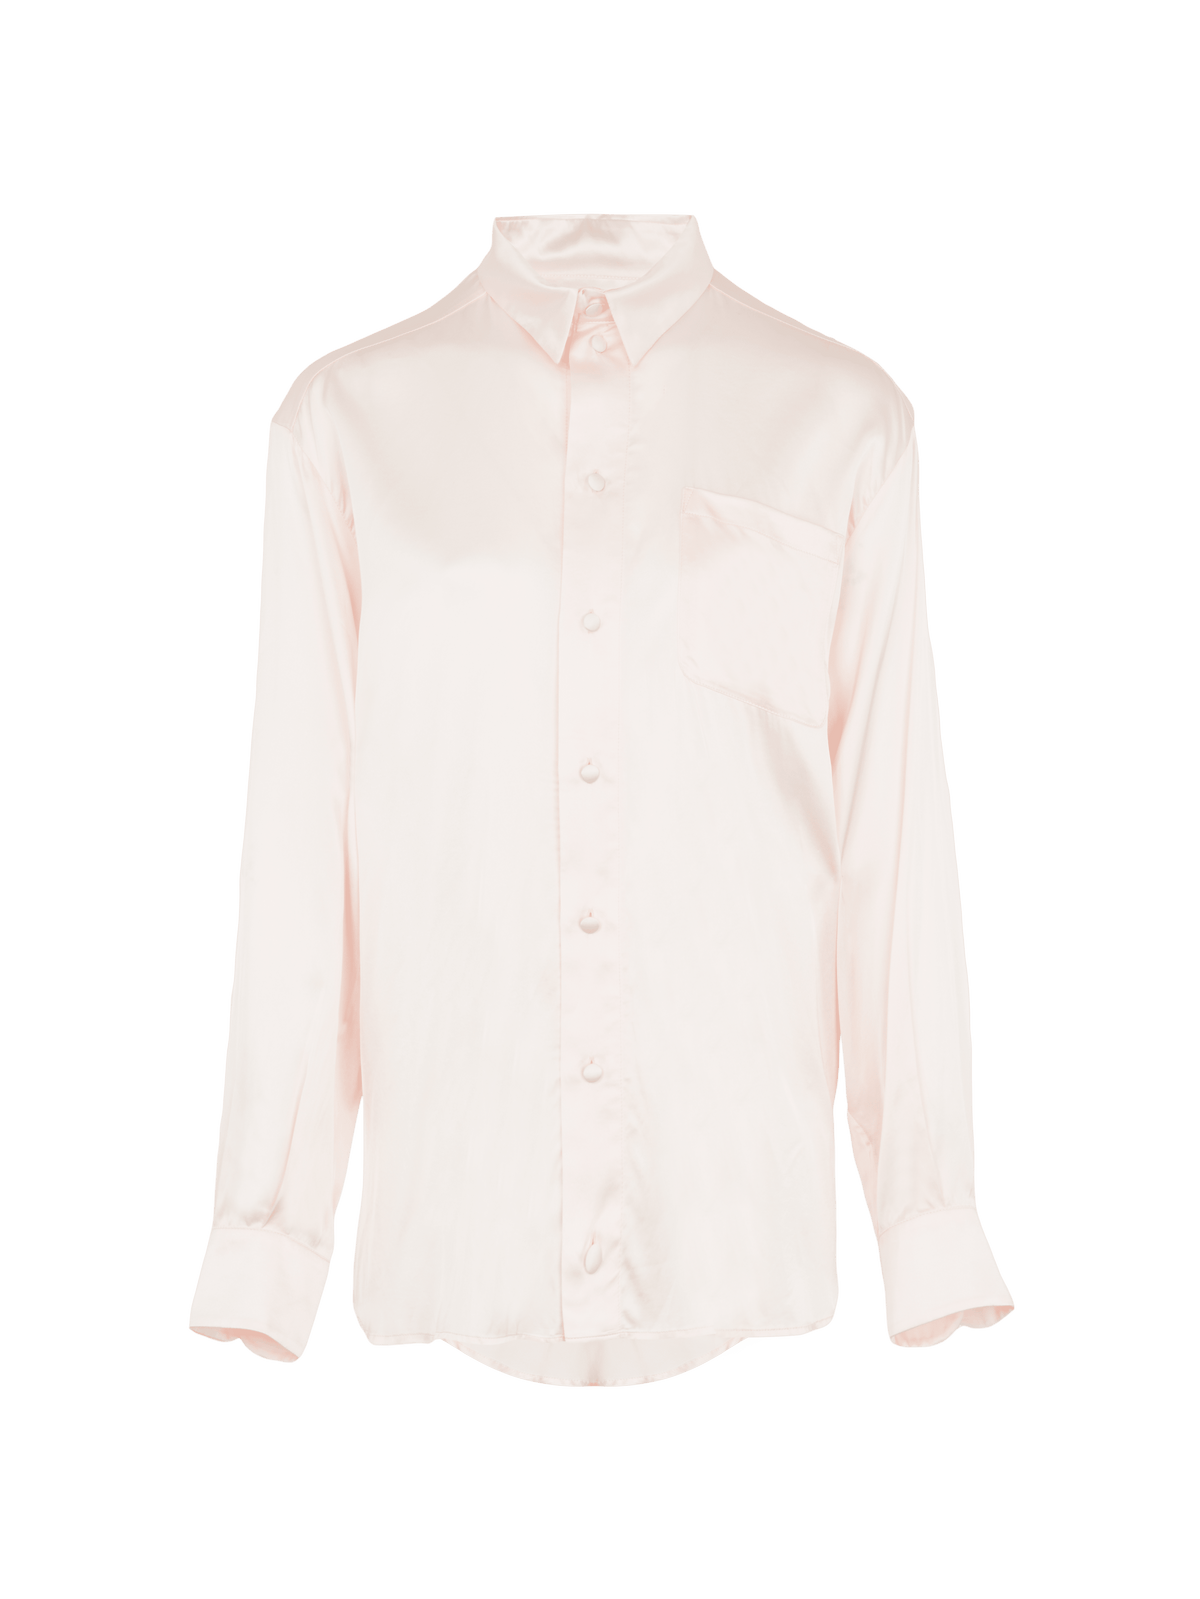 AGENOR - Chemise oversize en satin Amandine rose pâle Chemise Fête Impériale